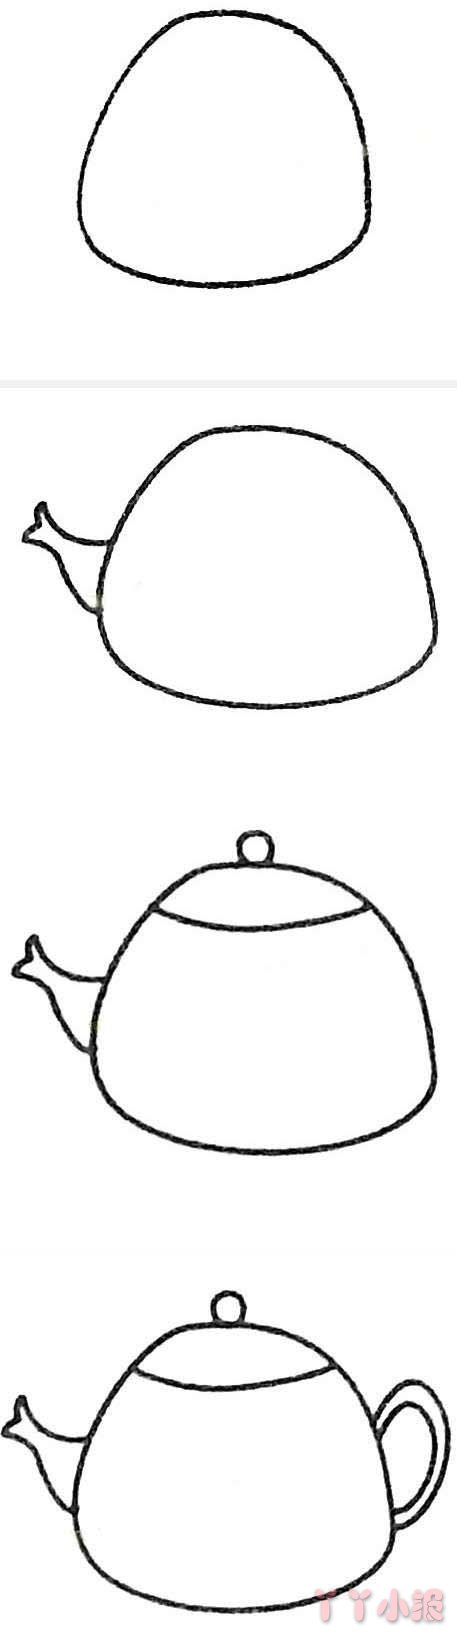 简笔画水壶茶壶怎么画简单好看